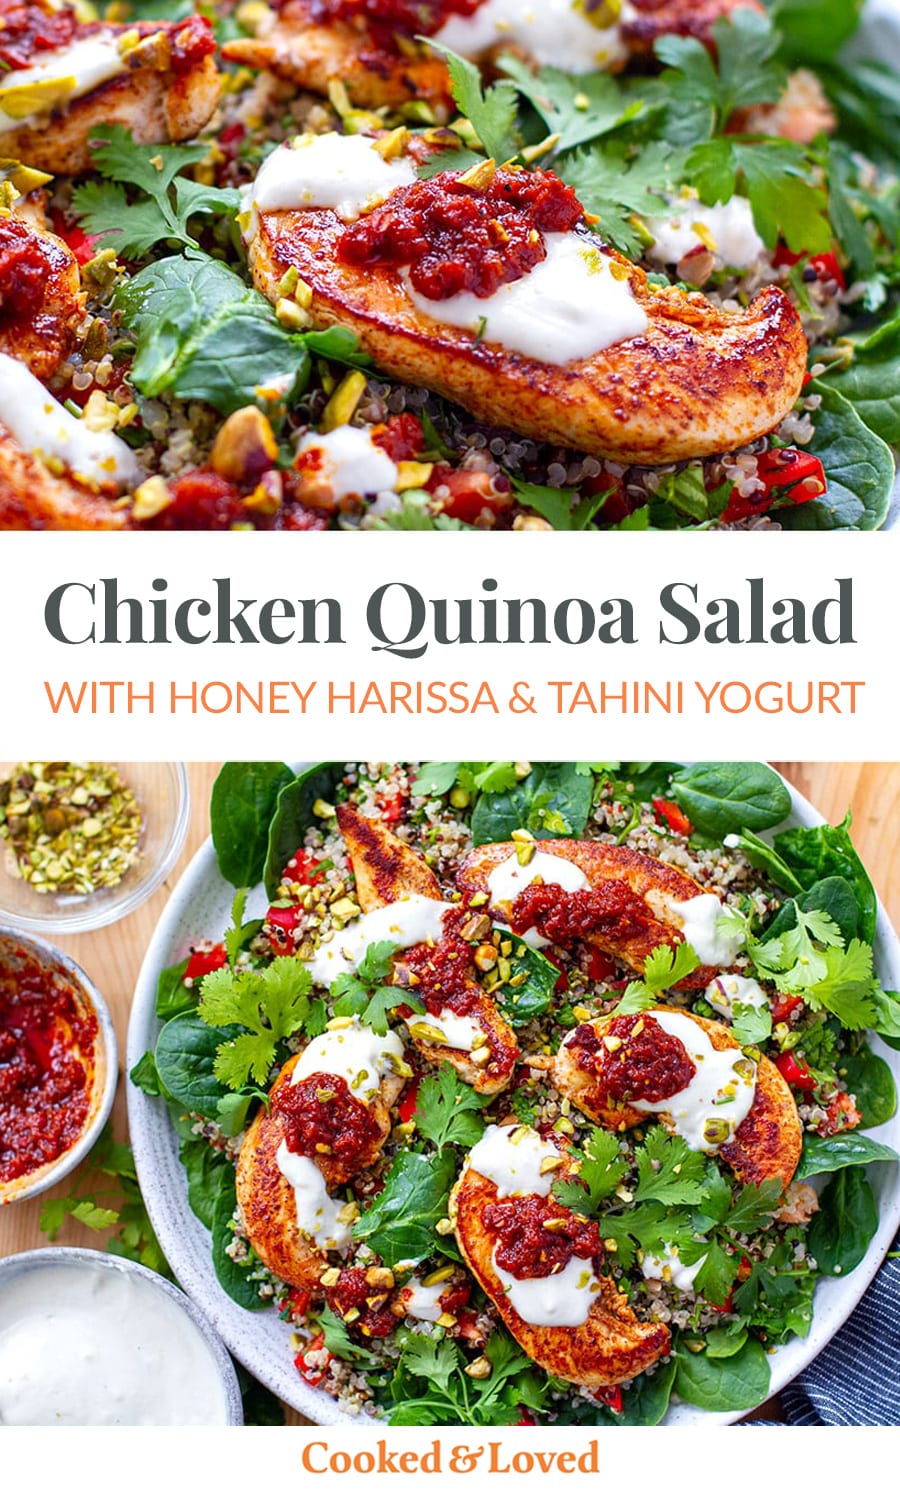 Chicken Quinoa Salad With Honey Harissa & Tahini Yogurt